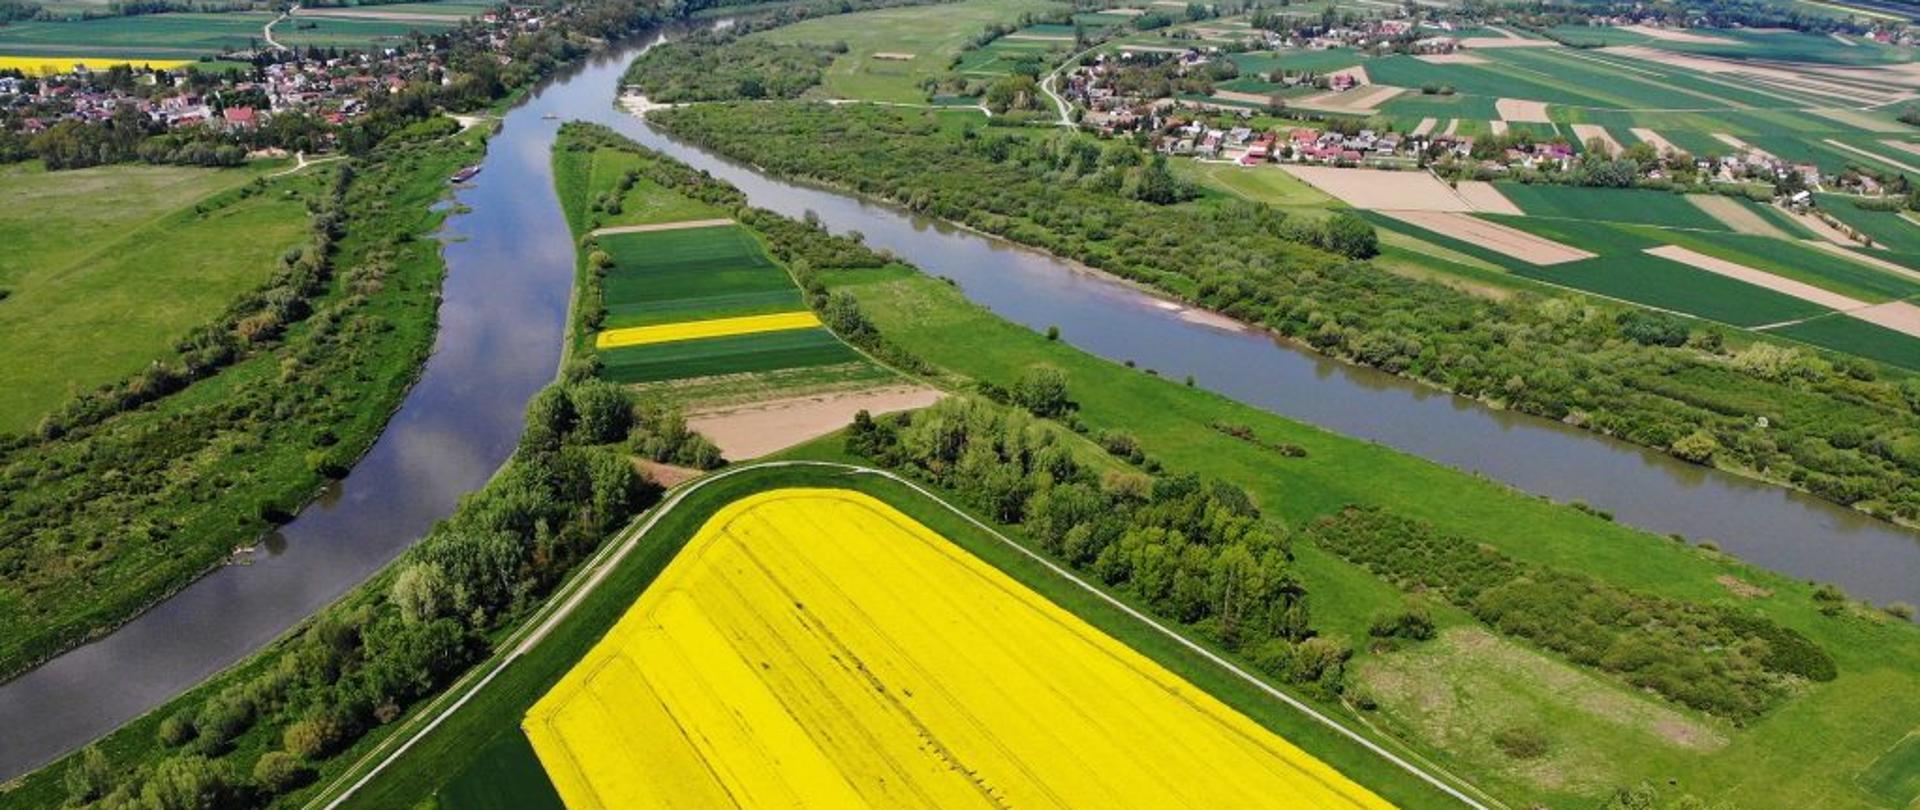 Zdjęcie przedstawia ujście Dunajca do Wisły z lotu ptaka w tle zabudowania po obu stronach rzek w ich "widłach" pole obsiane kwitnącym rzepakiem